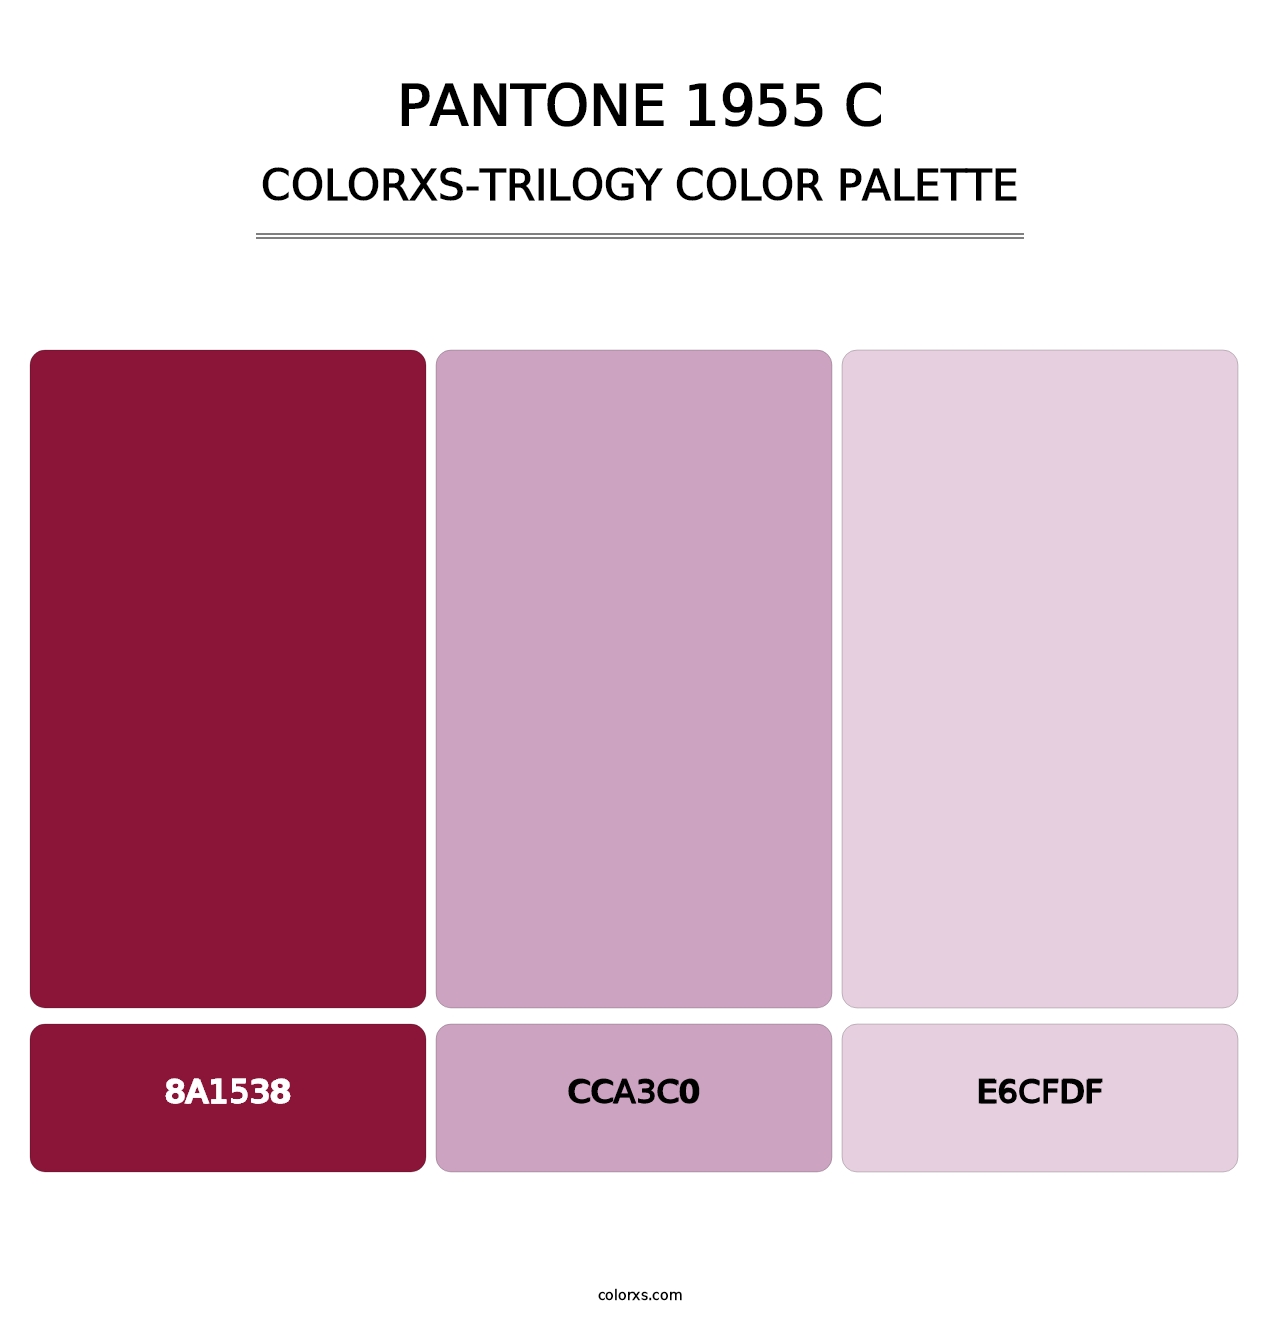 PANTONE 1955 C - Colorxs Trilogy Palette